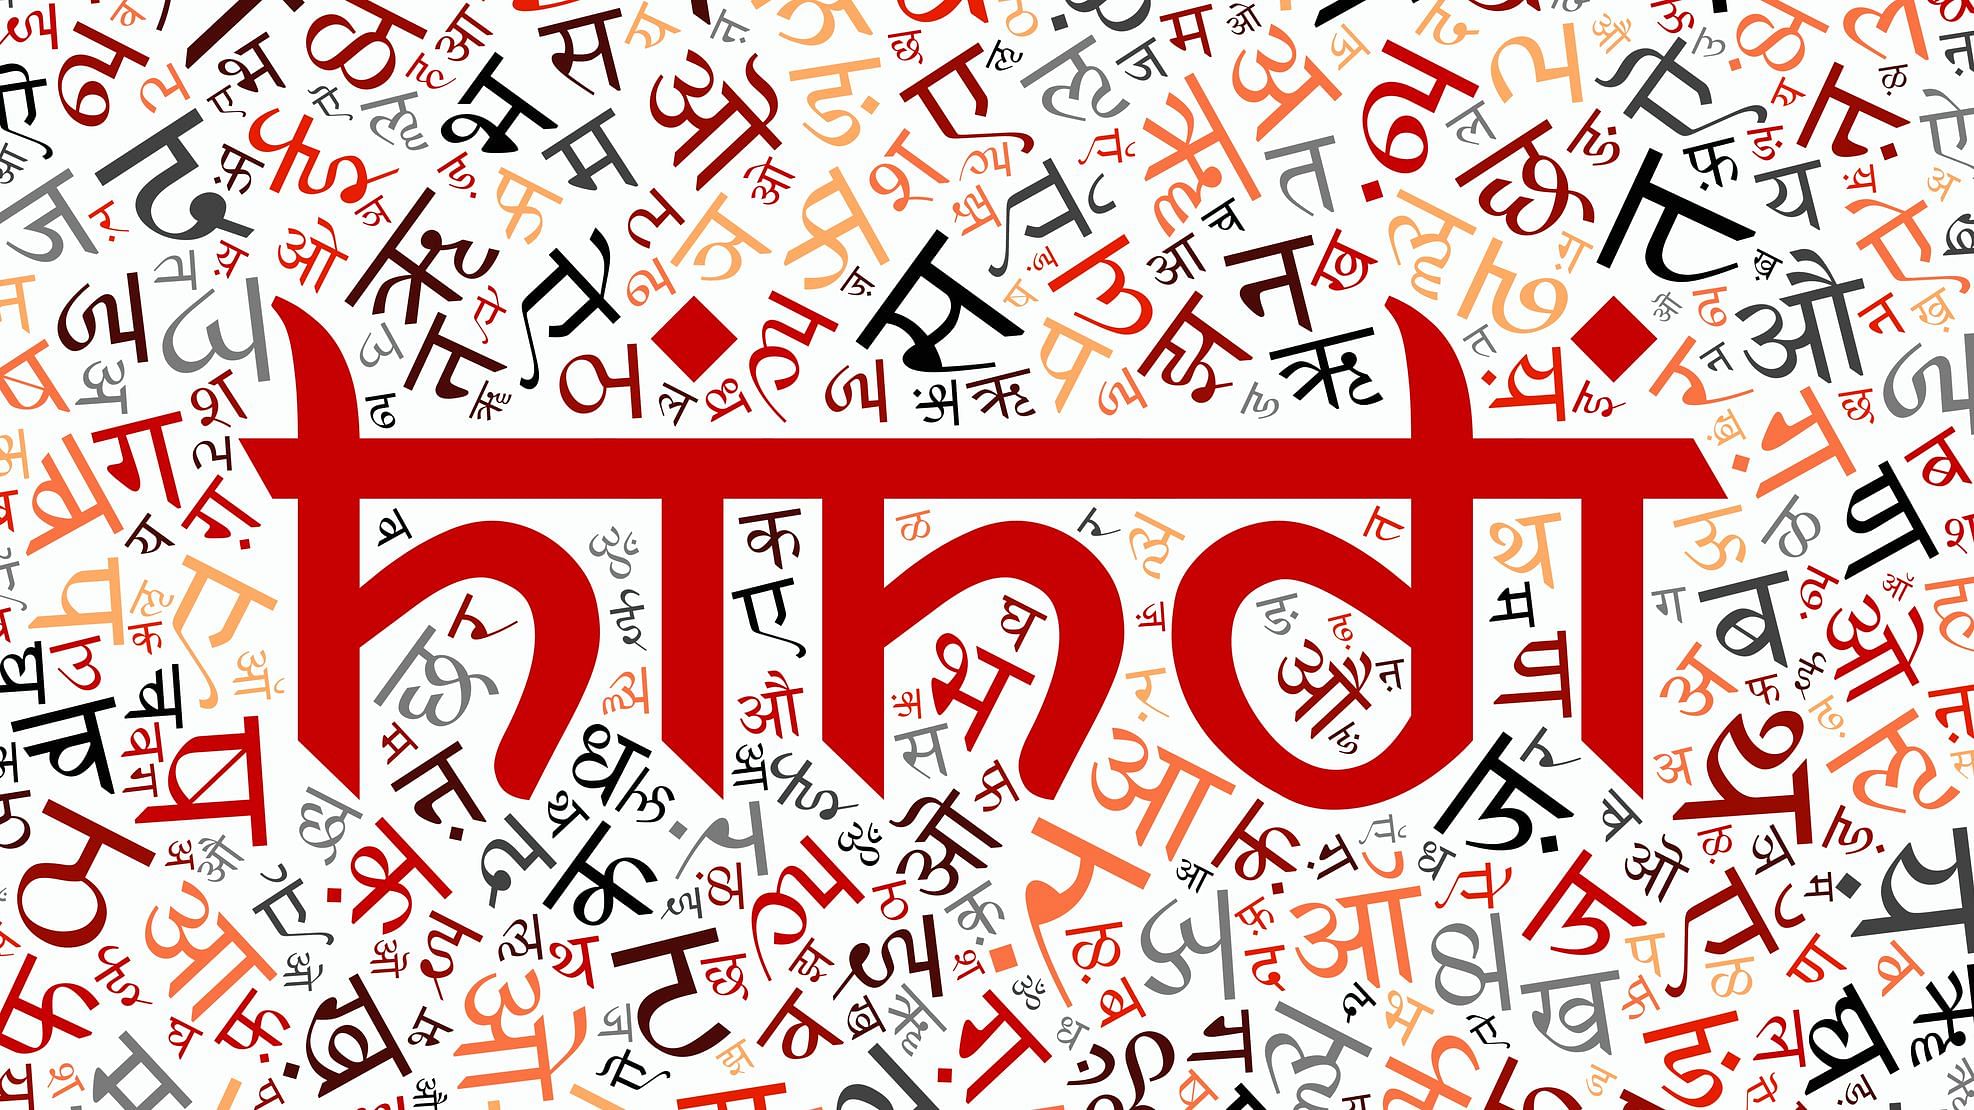 हिंदी और अंग्रेजी भारत की राष्ट्रीय भाषाएं कैसे बनीं? 